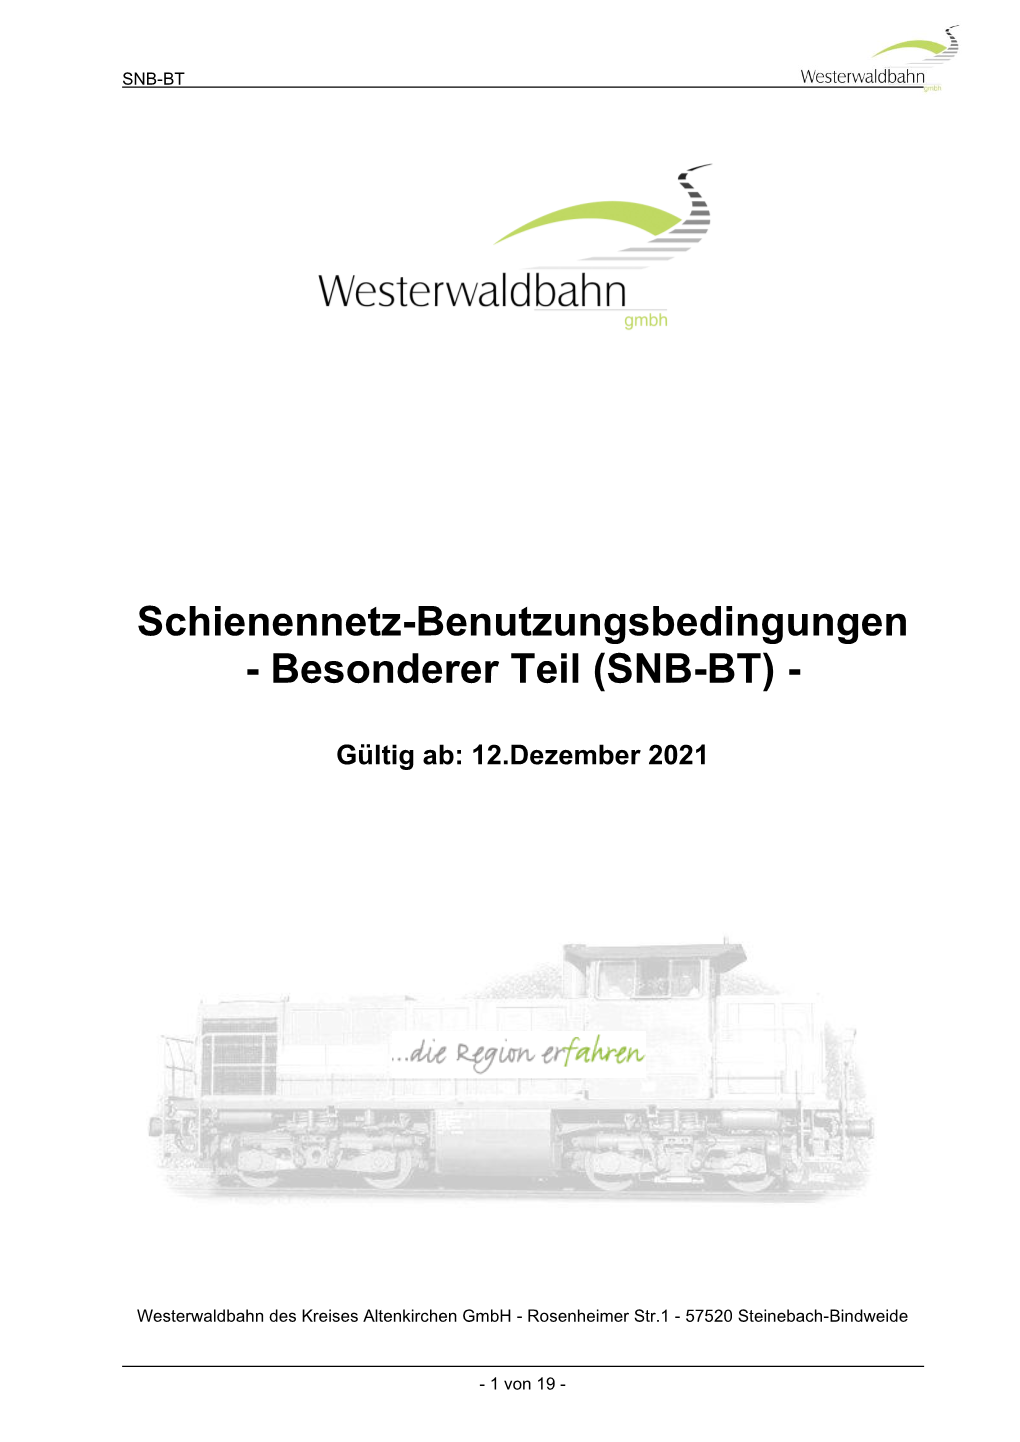 Schienennetz-Benutzungsbedingungen - Besonderer Teil (SNB-BT)